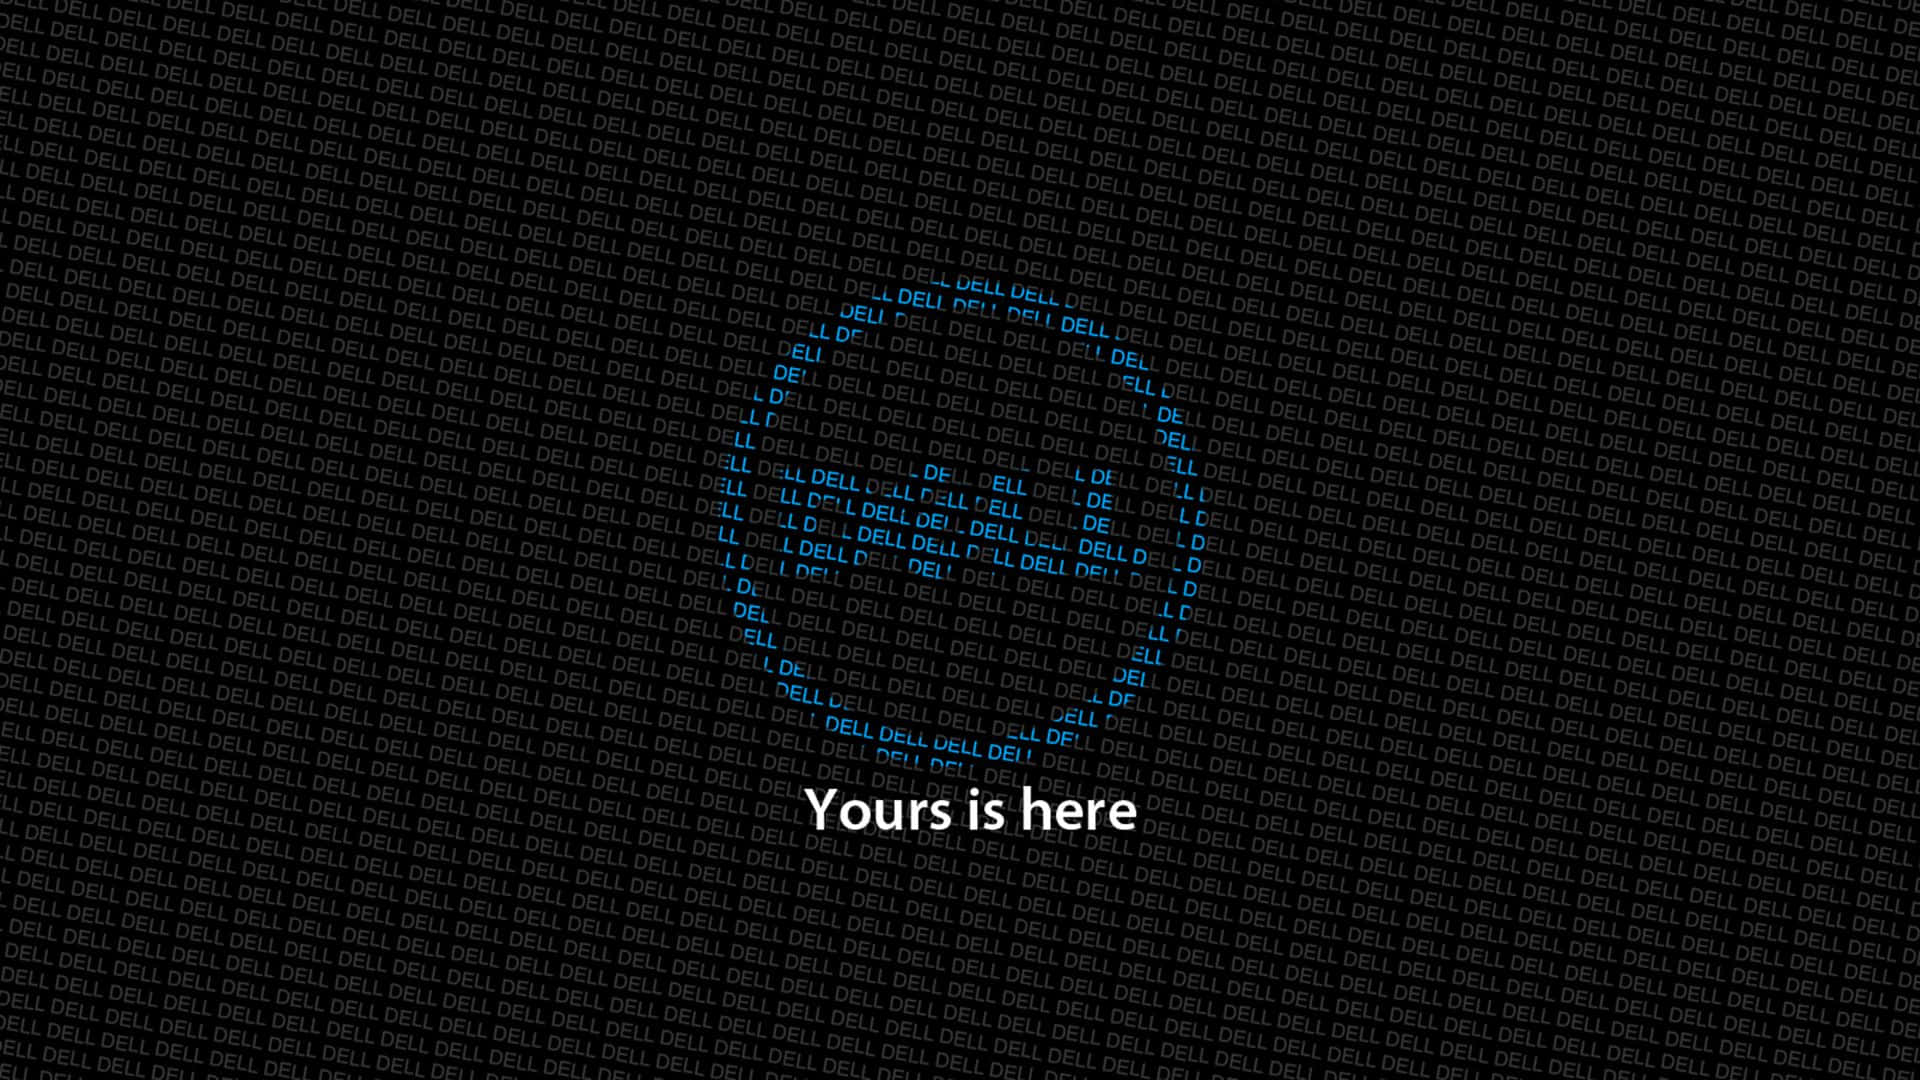 Steigernsie Ihr Computing-erlebnis Mit Dell.